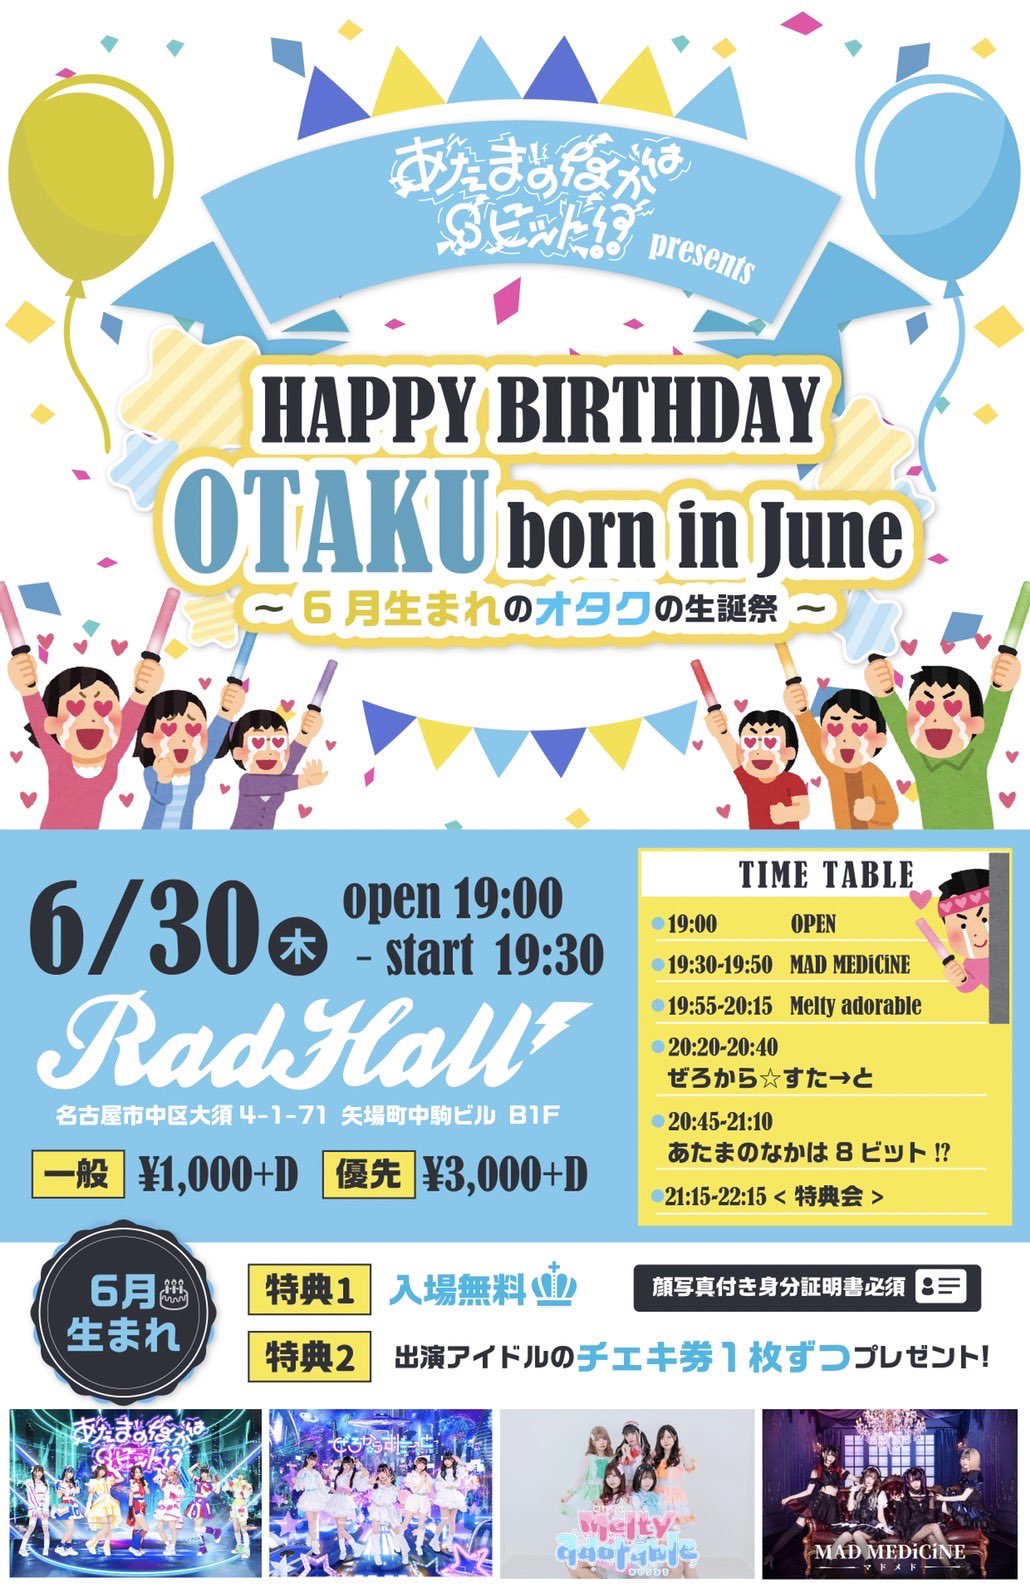 あたまのなかは8ビットpre.HAPPY BIRTHDAY OTAKU born in June